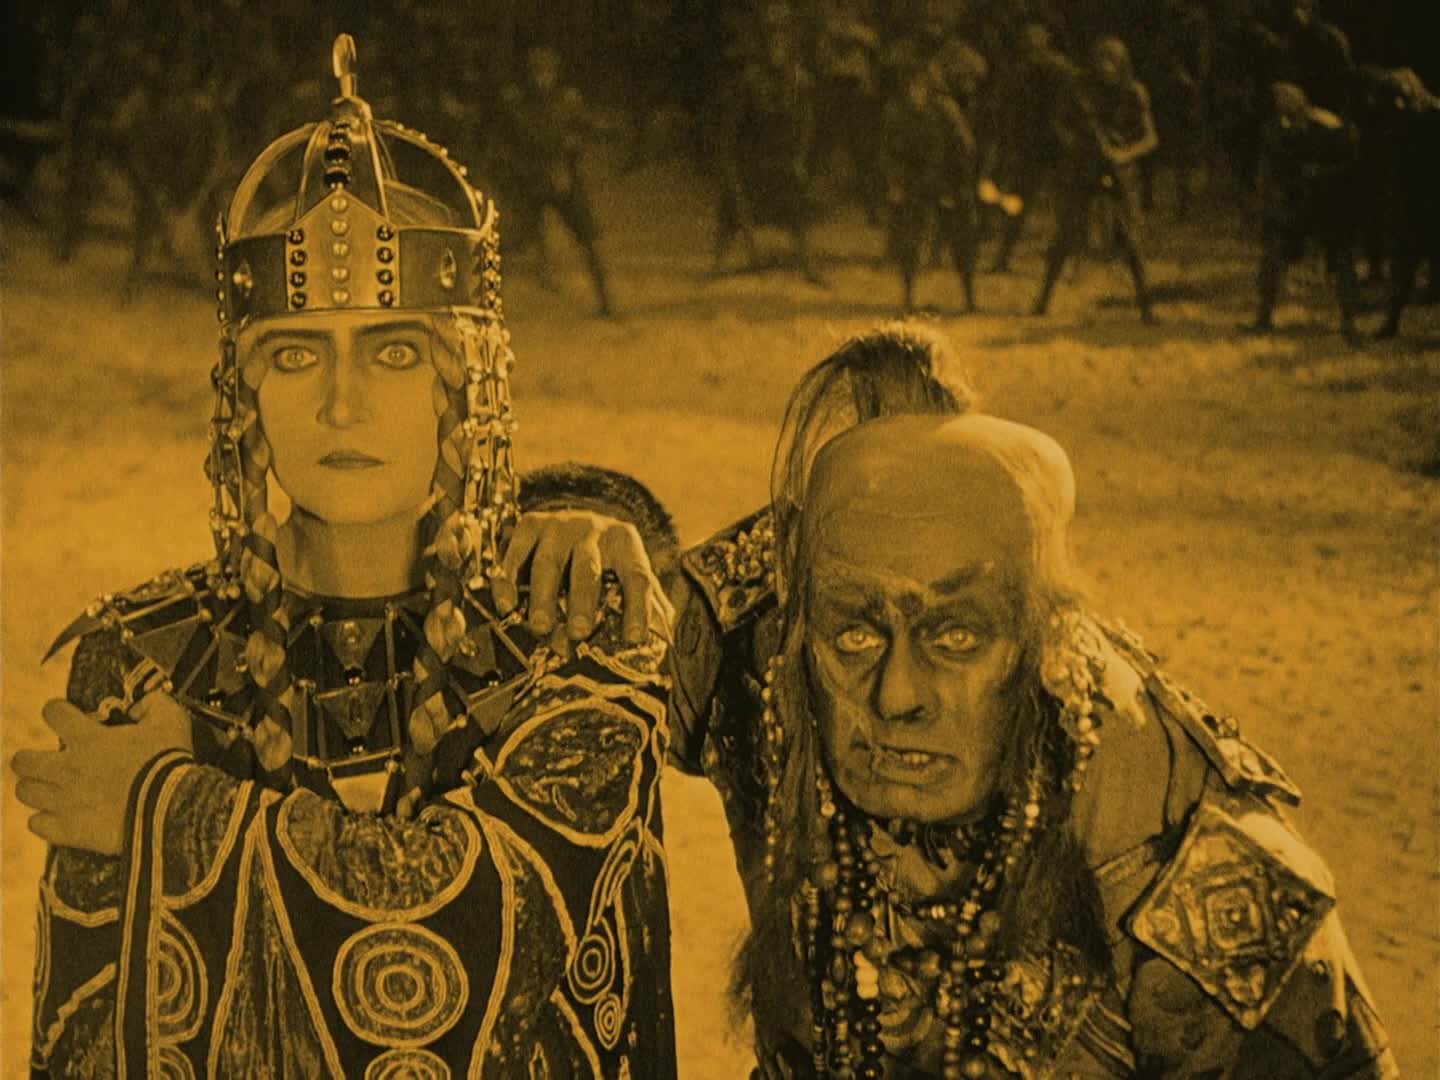 Die Nibelungen: Kriemhilds Rache (1924)